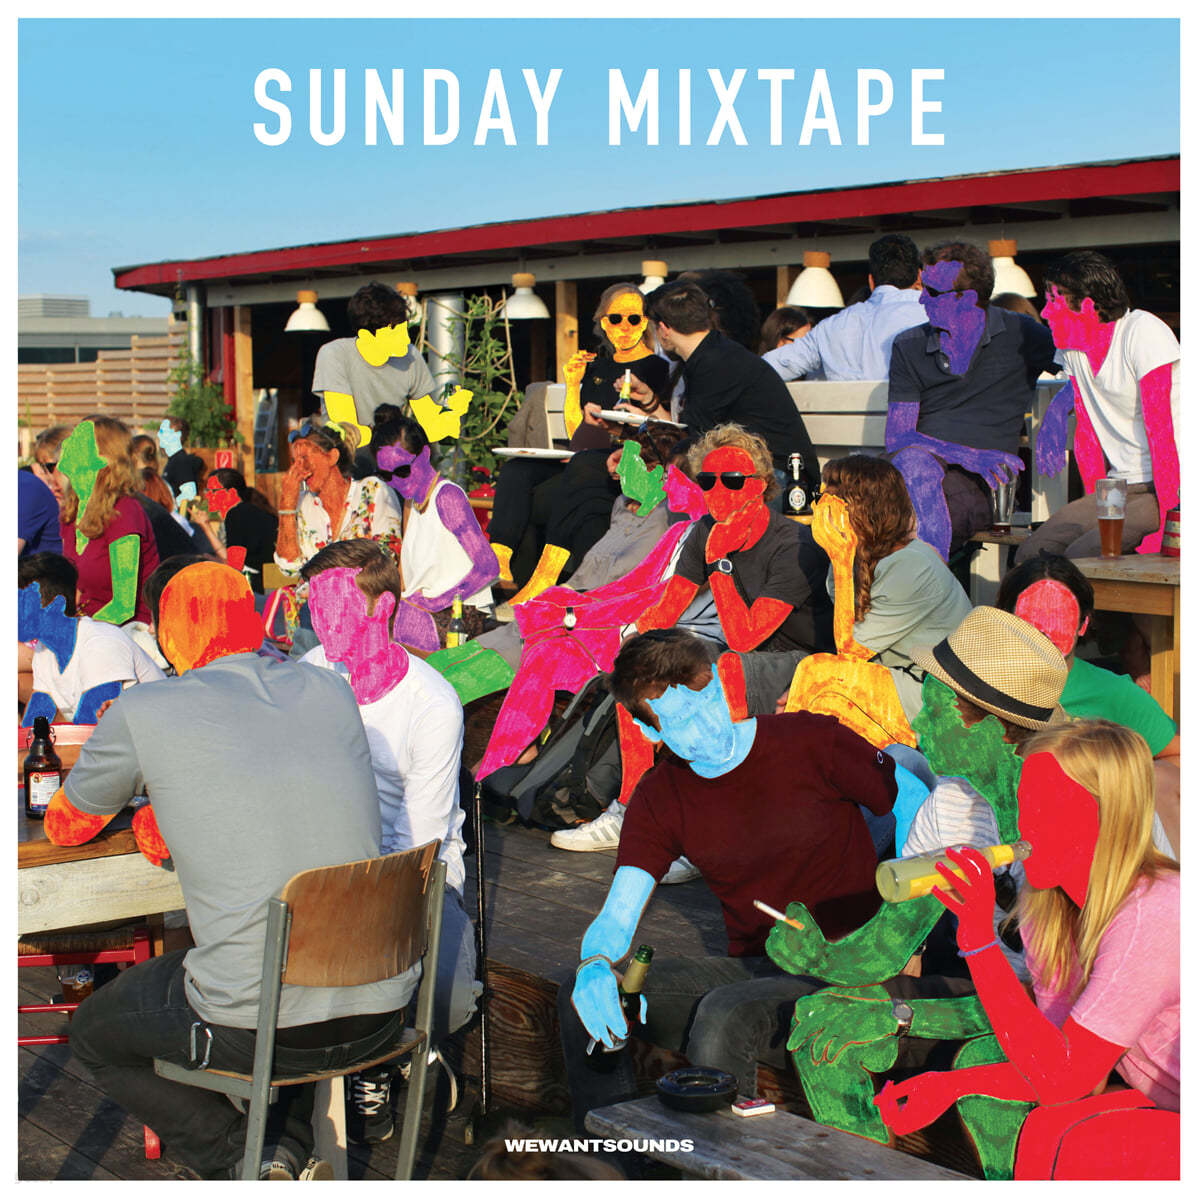 나른한 일요일을 위한 음악 모음집 (Sunday Mixtape) [2LP] 